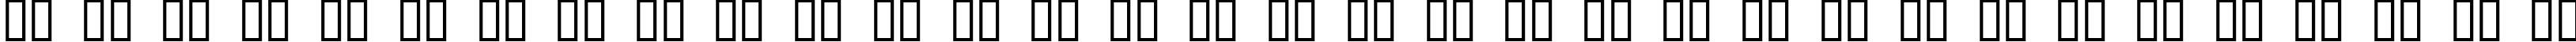 Пример написания русского алфавита шрифтом Sand